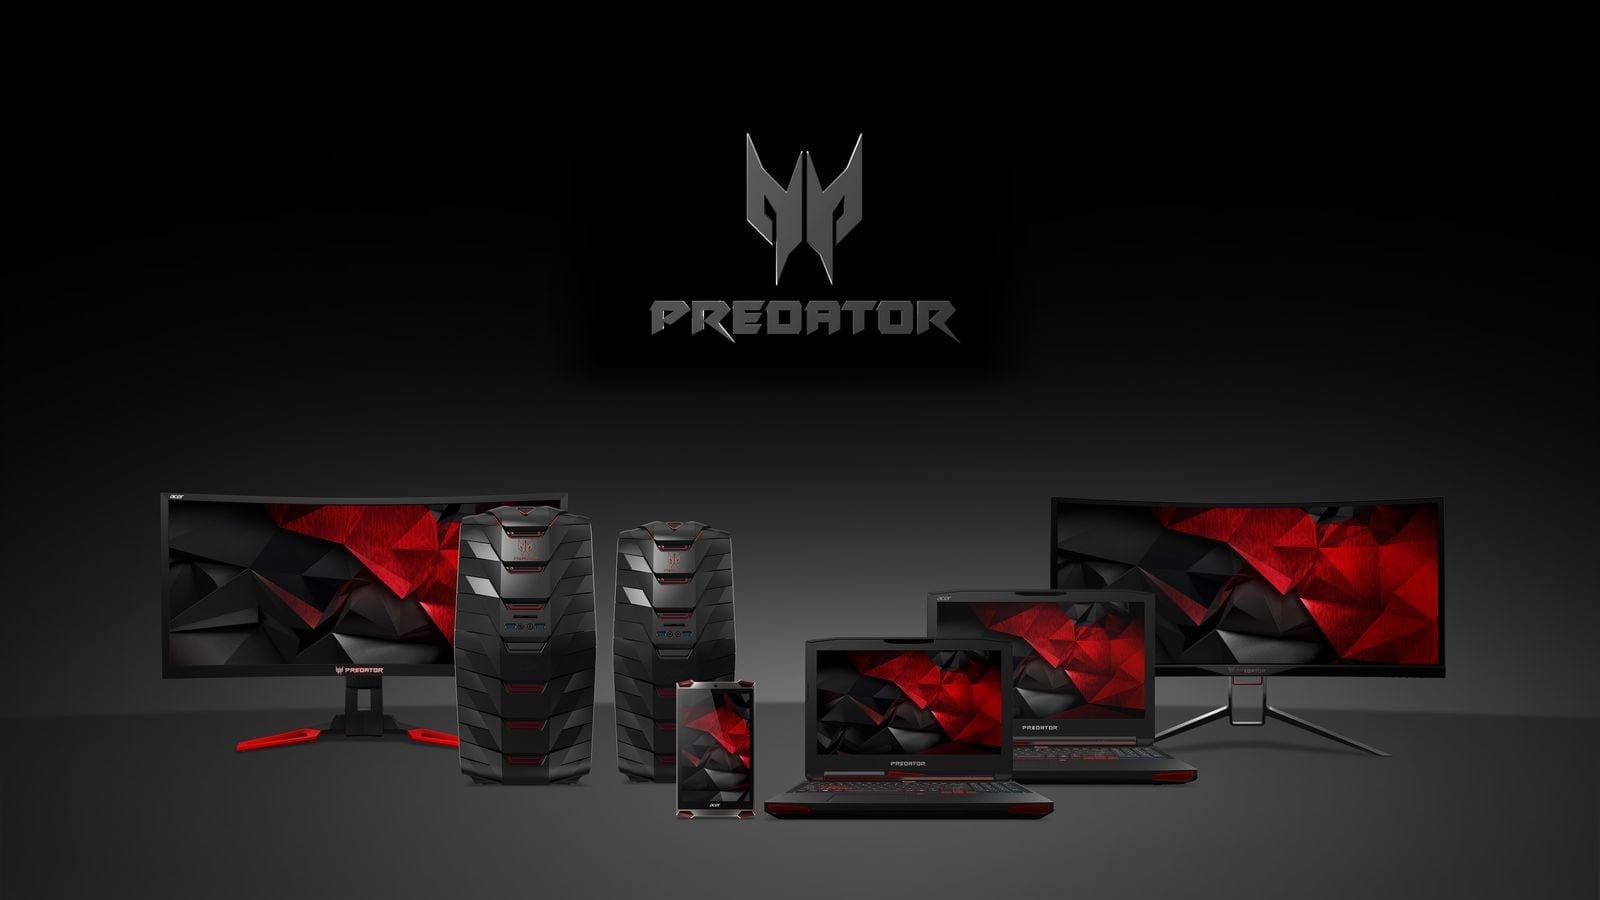 Acer a lansat în România noua serie de sisteme de gaming Predator: vedeta este modelul Predator G9-791, primul laptop de gaming cu ecran 4K